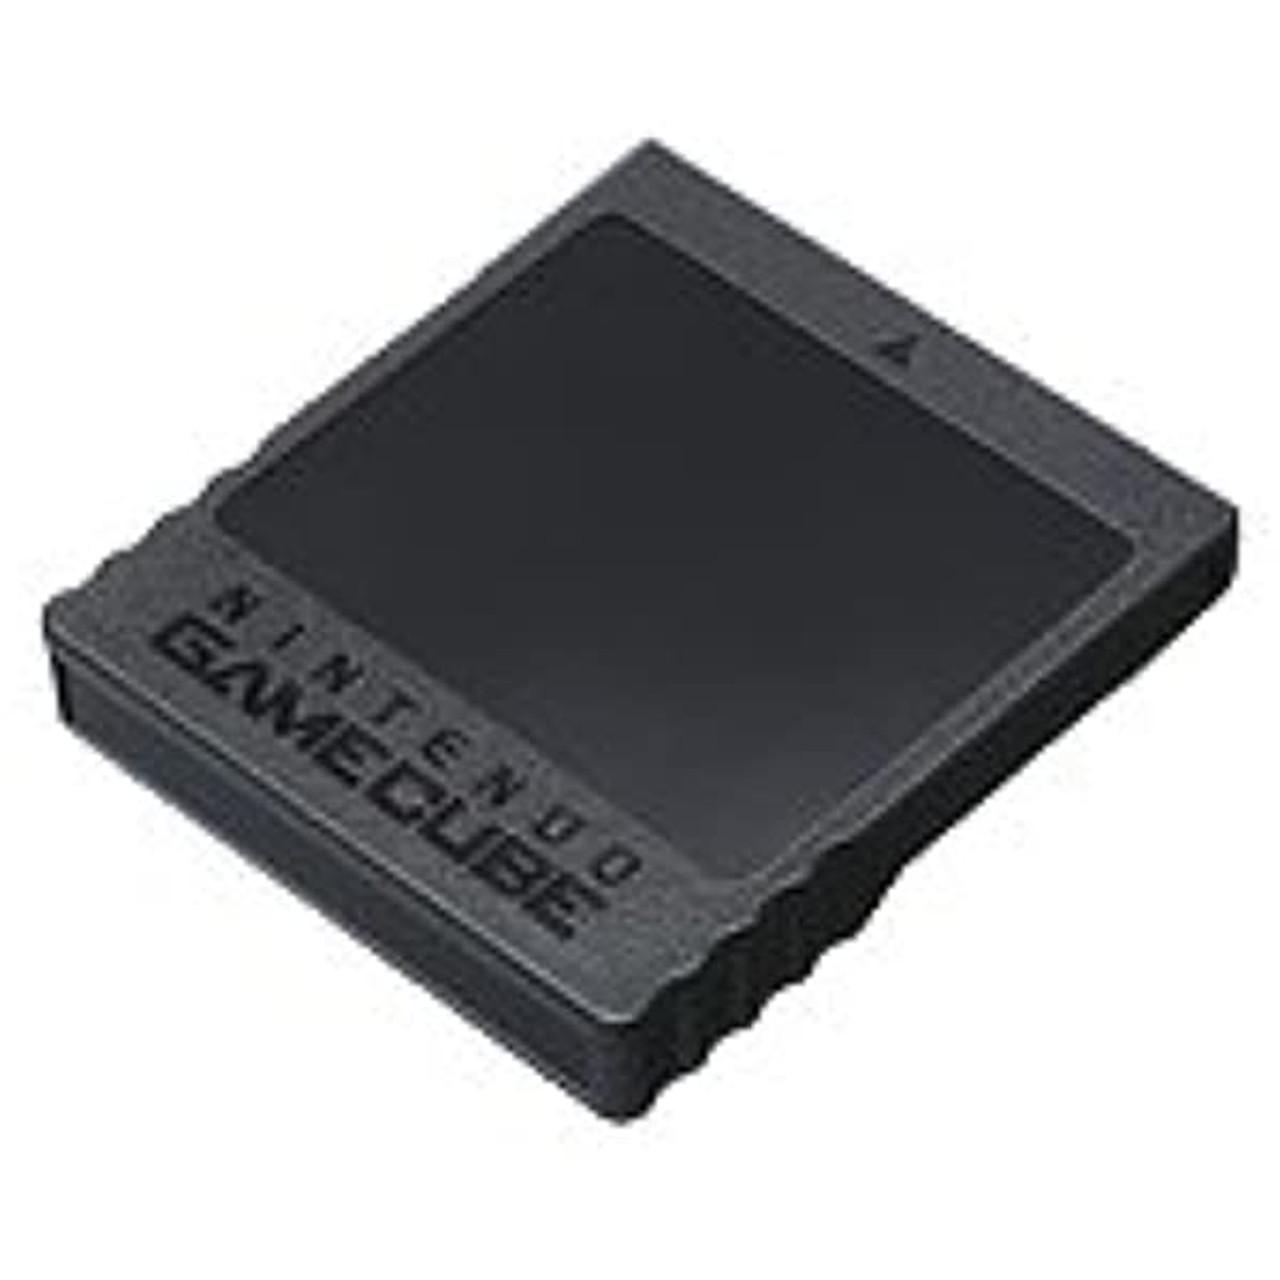  GameCube 251 Memory Card : Video Games